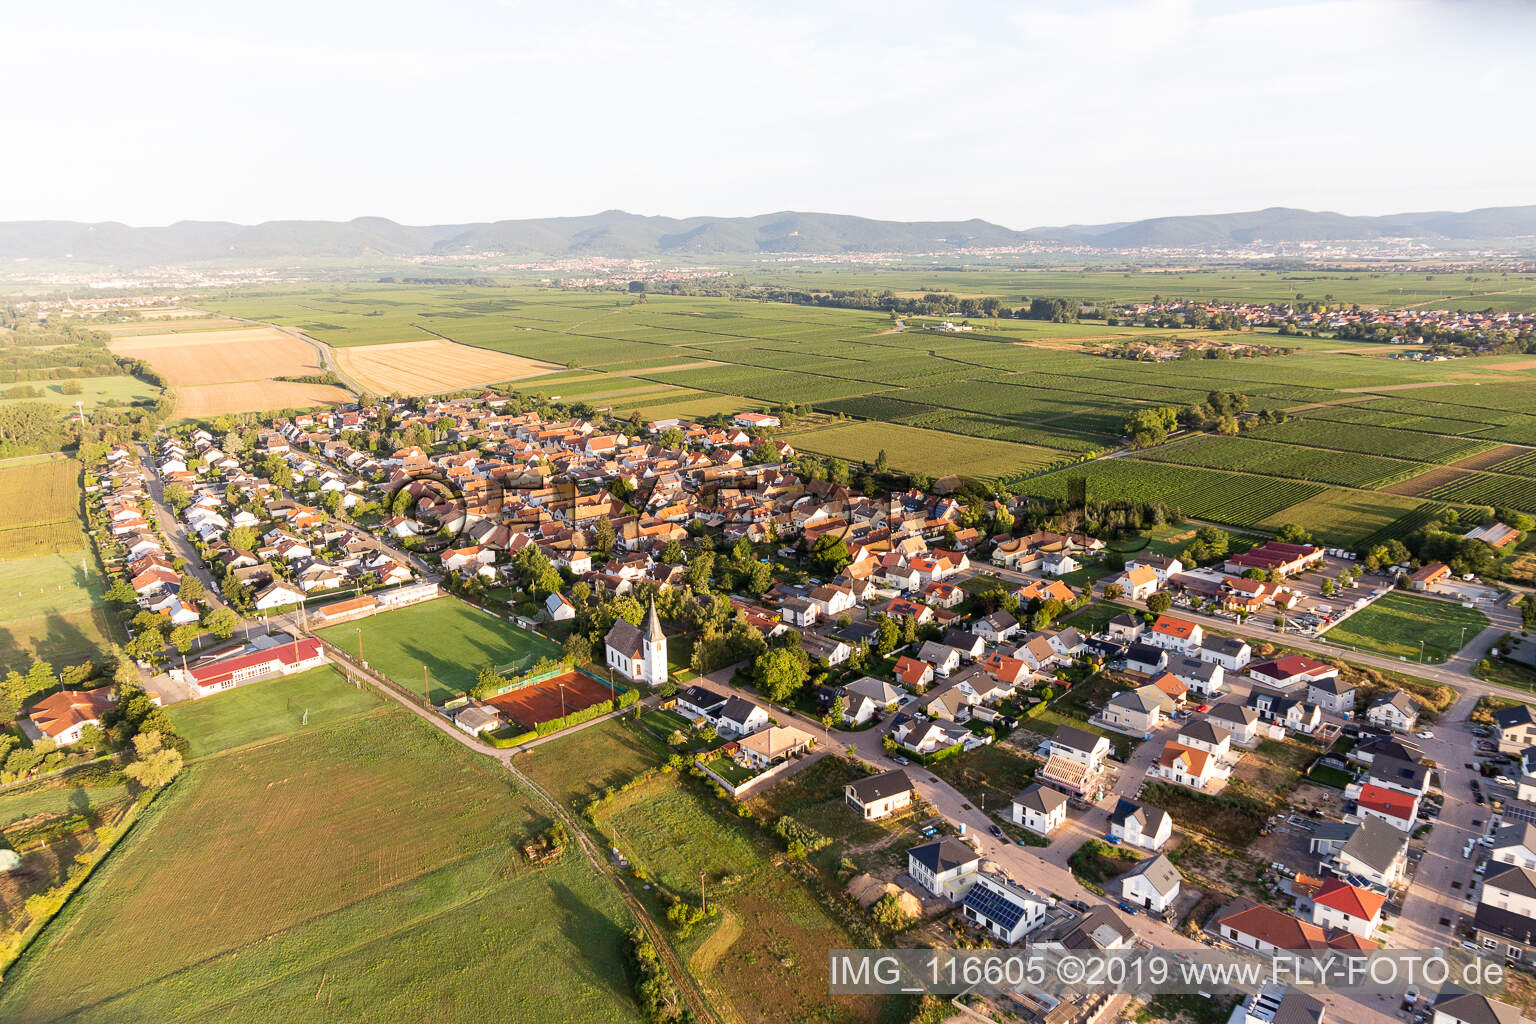 Altdorf dans le département Rhénanie-Palatinat, Allemagne vue d'en haut